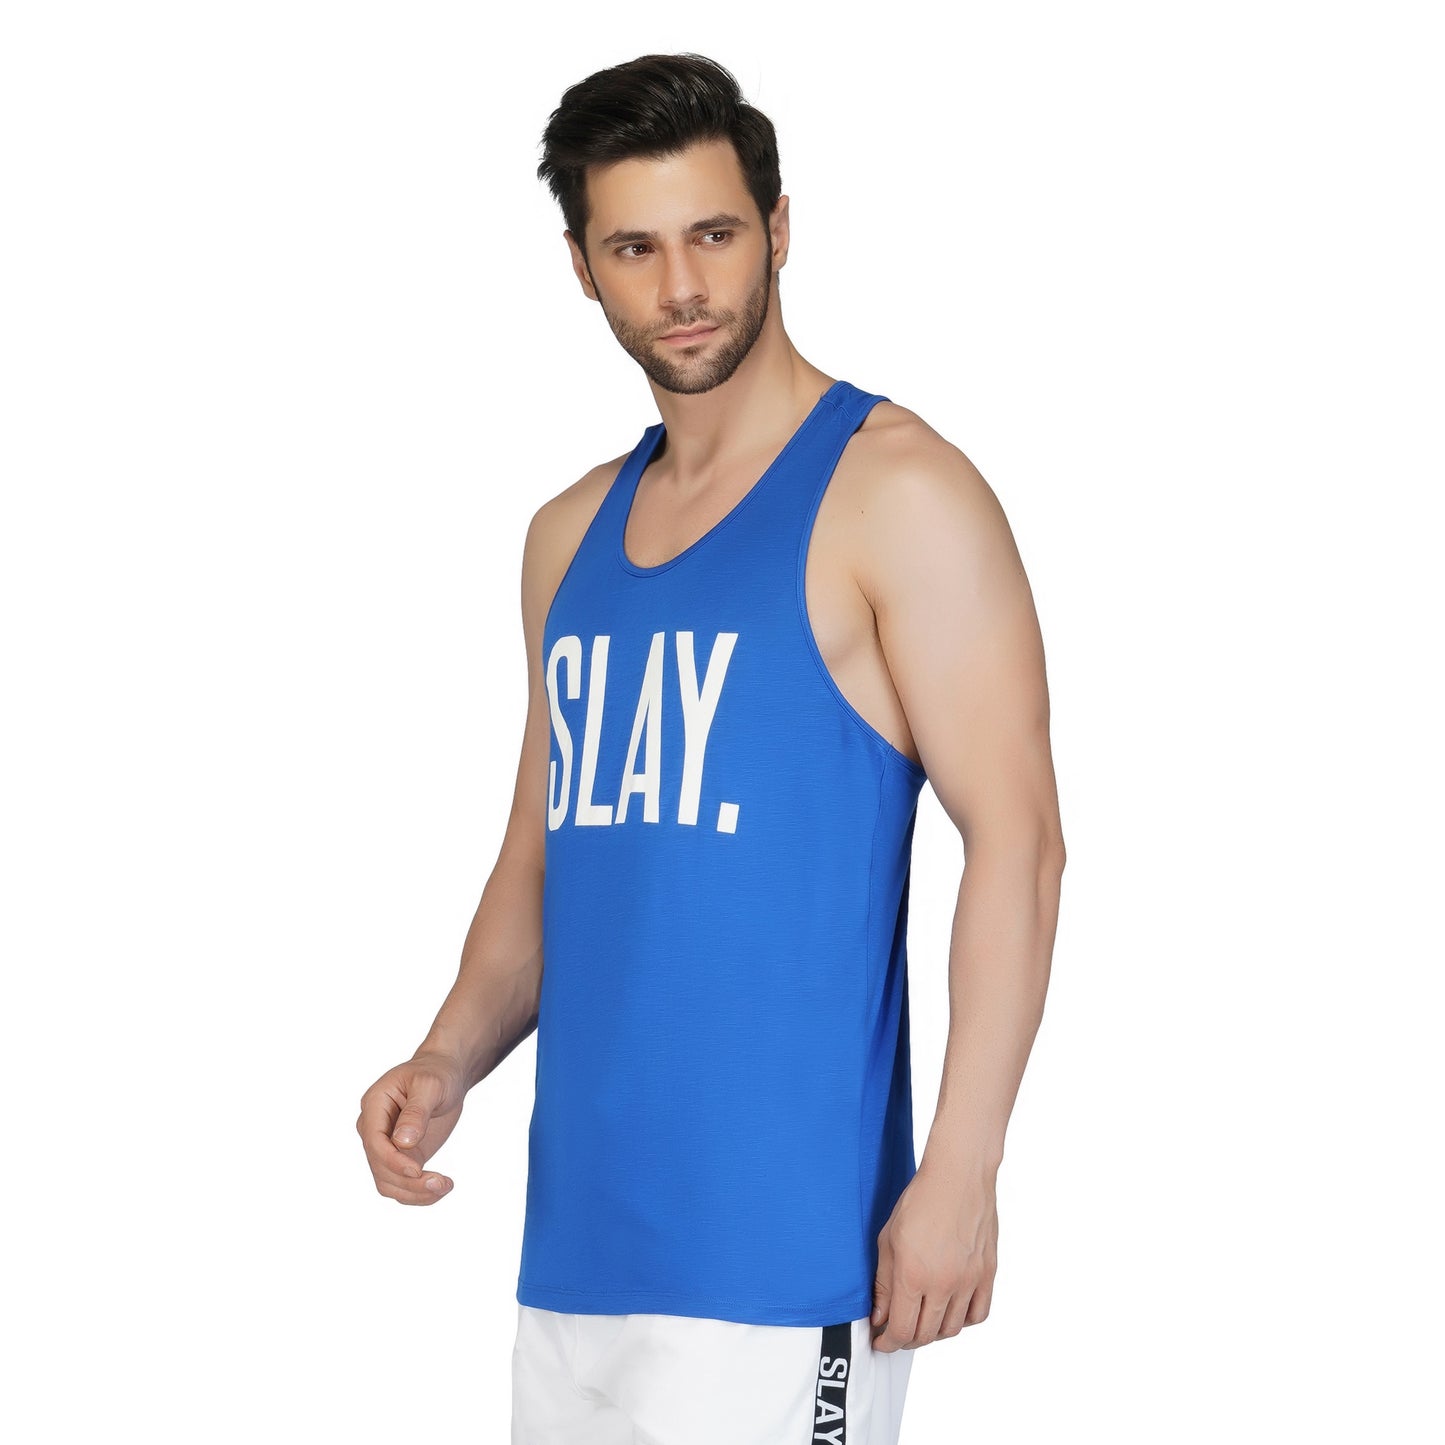 SLAY. Men's Blue Gym Vest